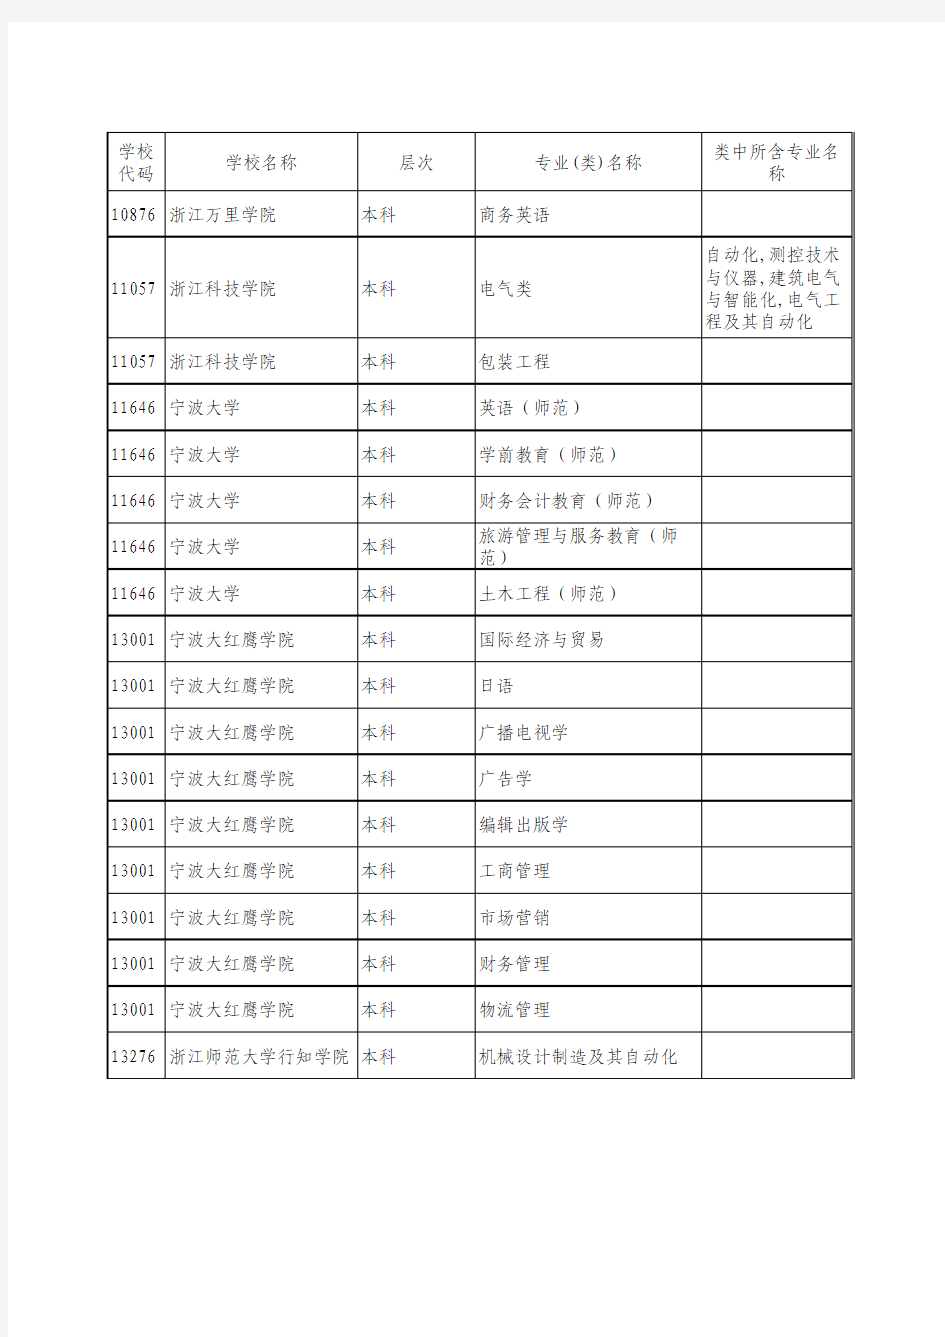 2017年浙江省普通高校单独考试招生有外语要求专业(类)汇总表